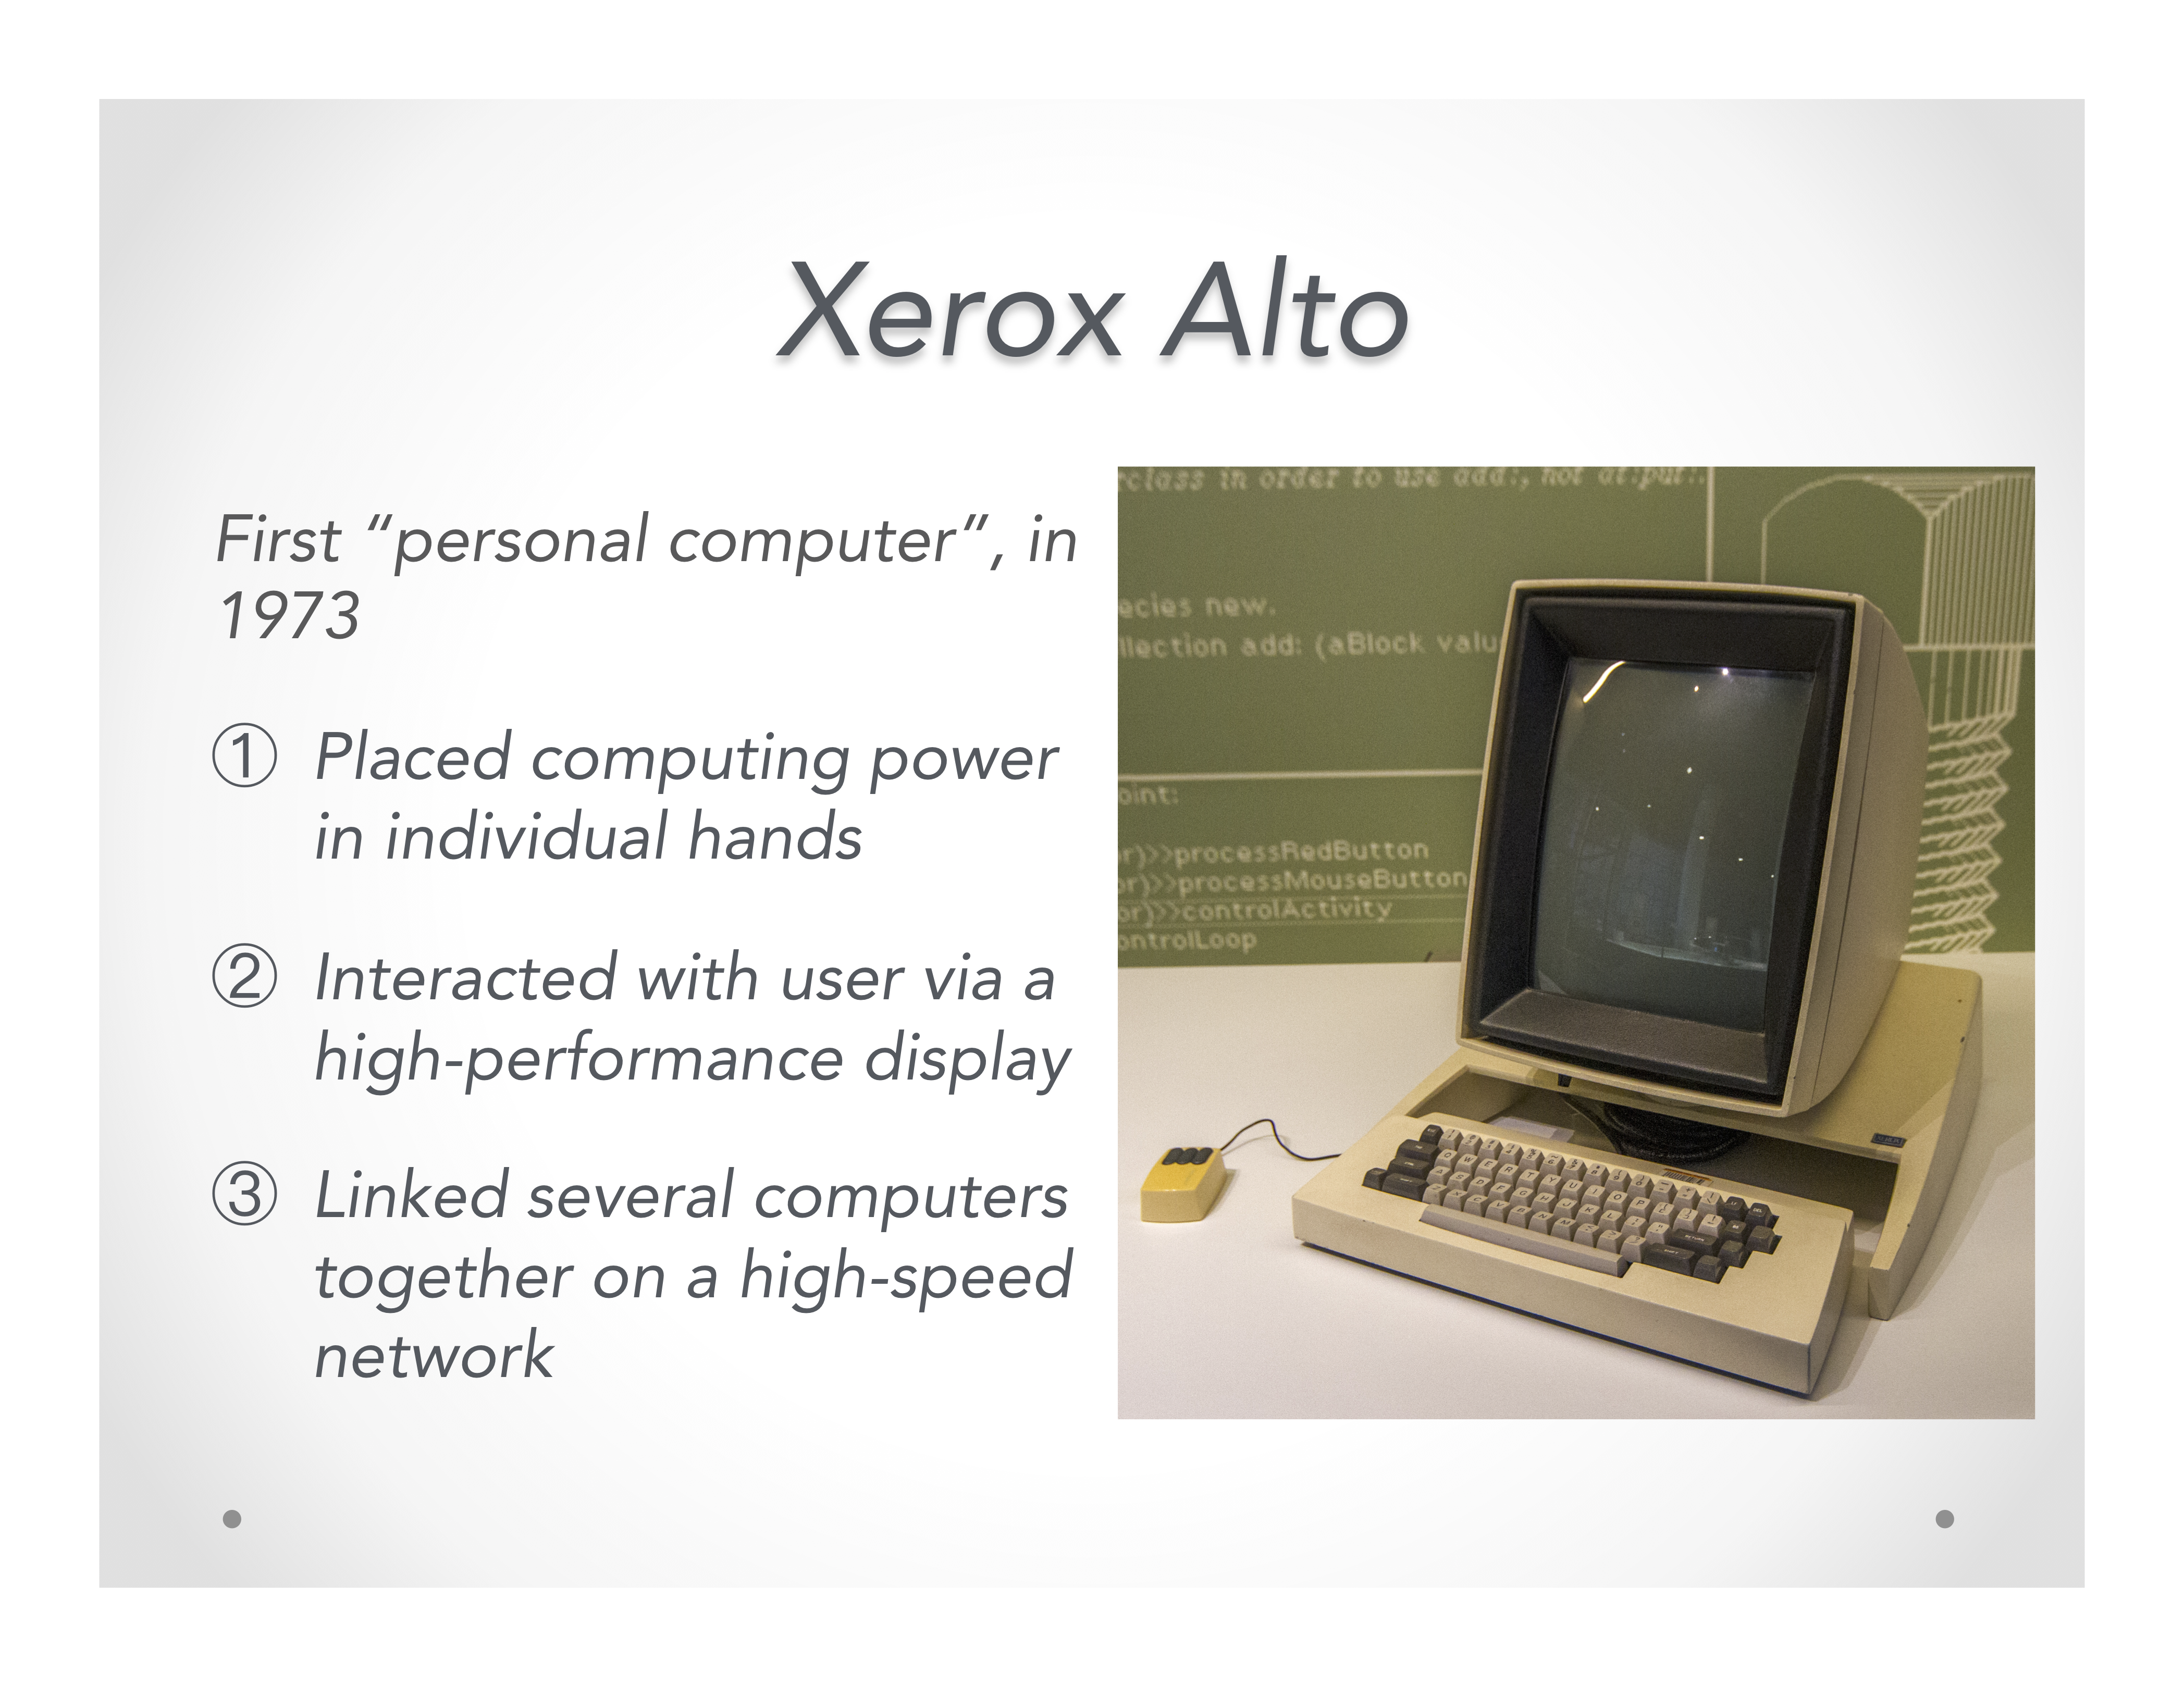 Bild vom Xerox Alto, dem ersten PC